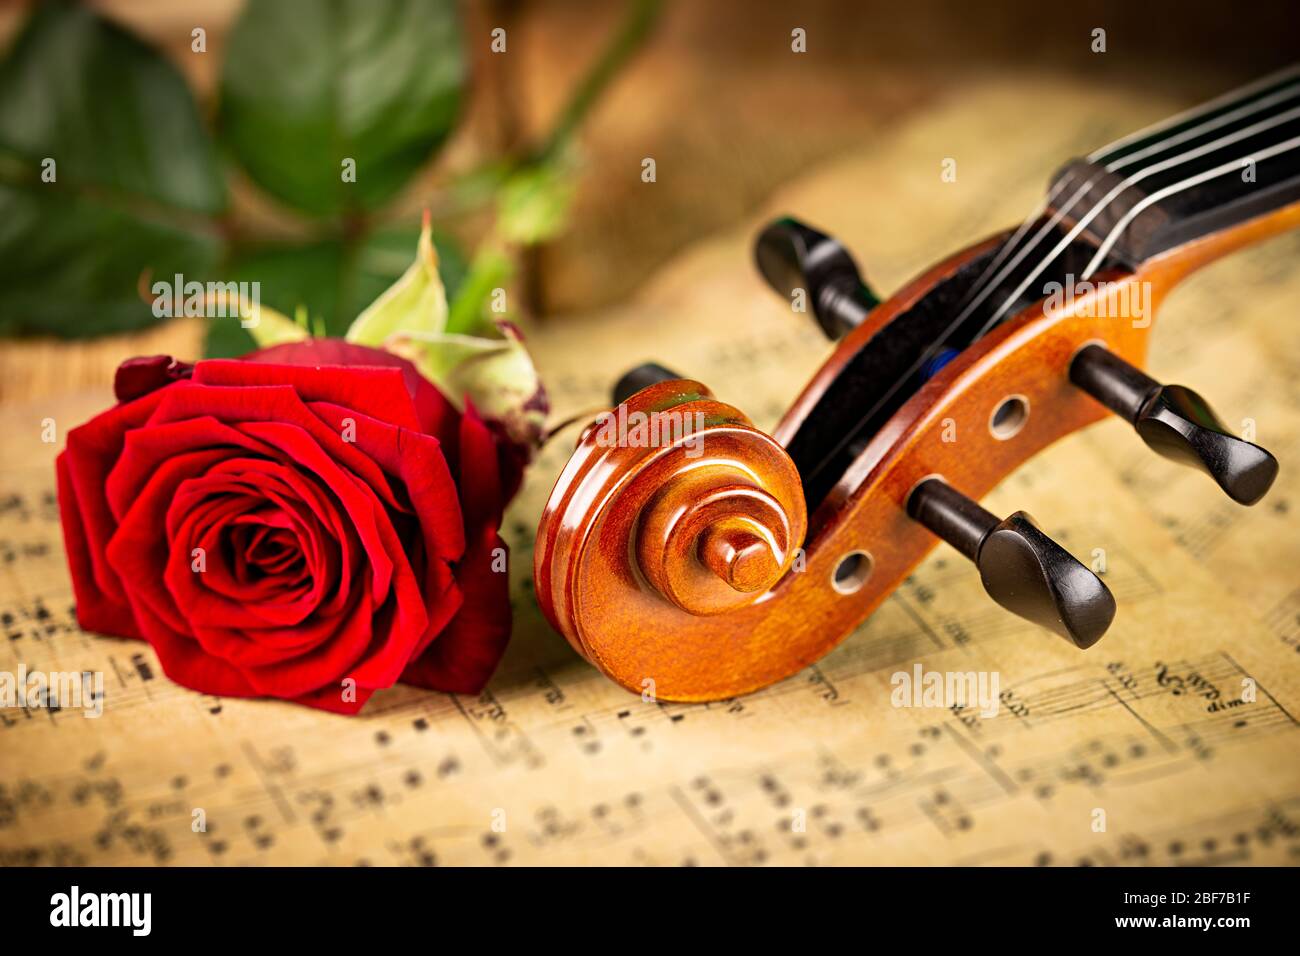 musique classique rétro pour violon chaîne instrutt sur la vieille musique note papier avec fleur de rose rouge sur fond de bois de chêne ancien. musique classique rom Banque D'Images